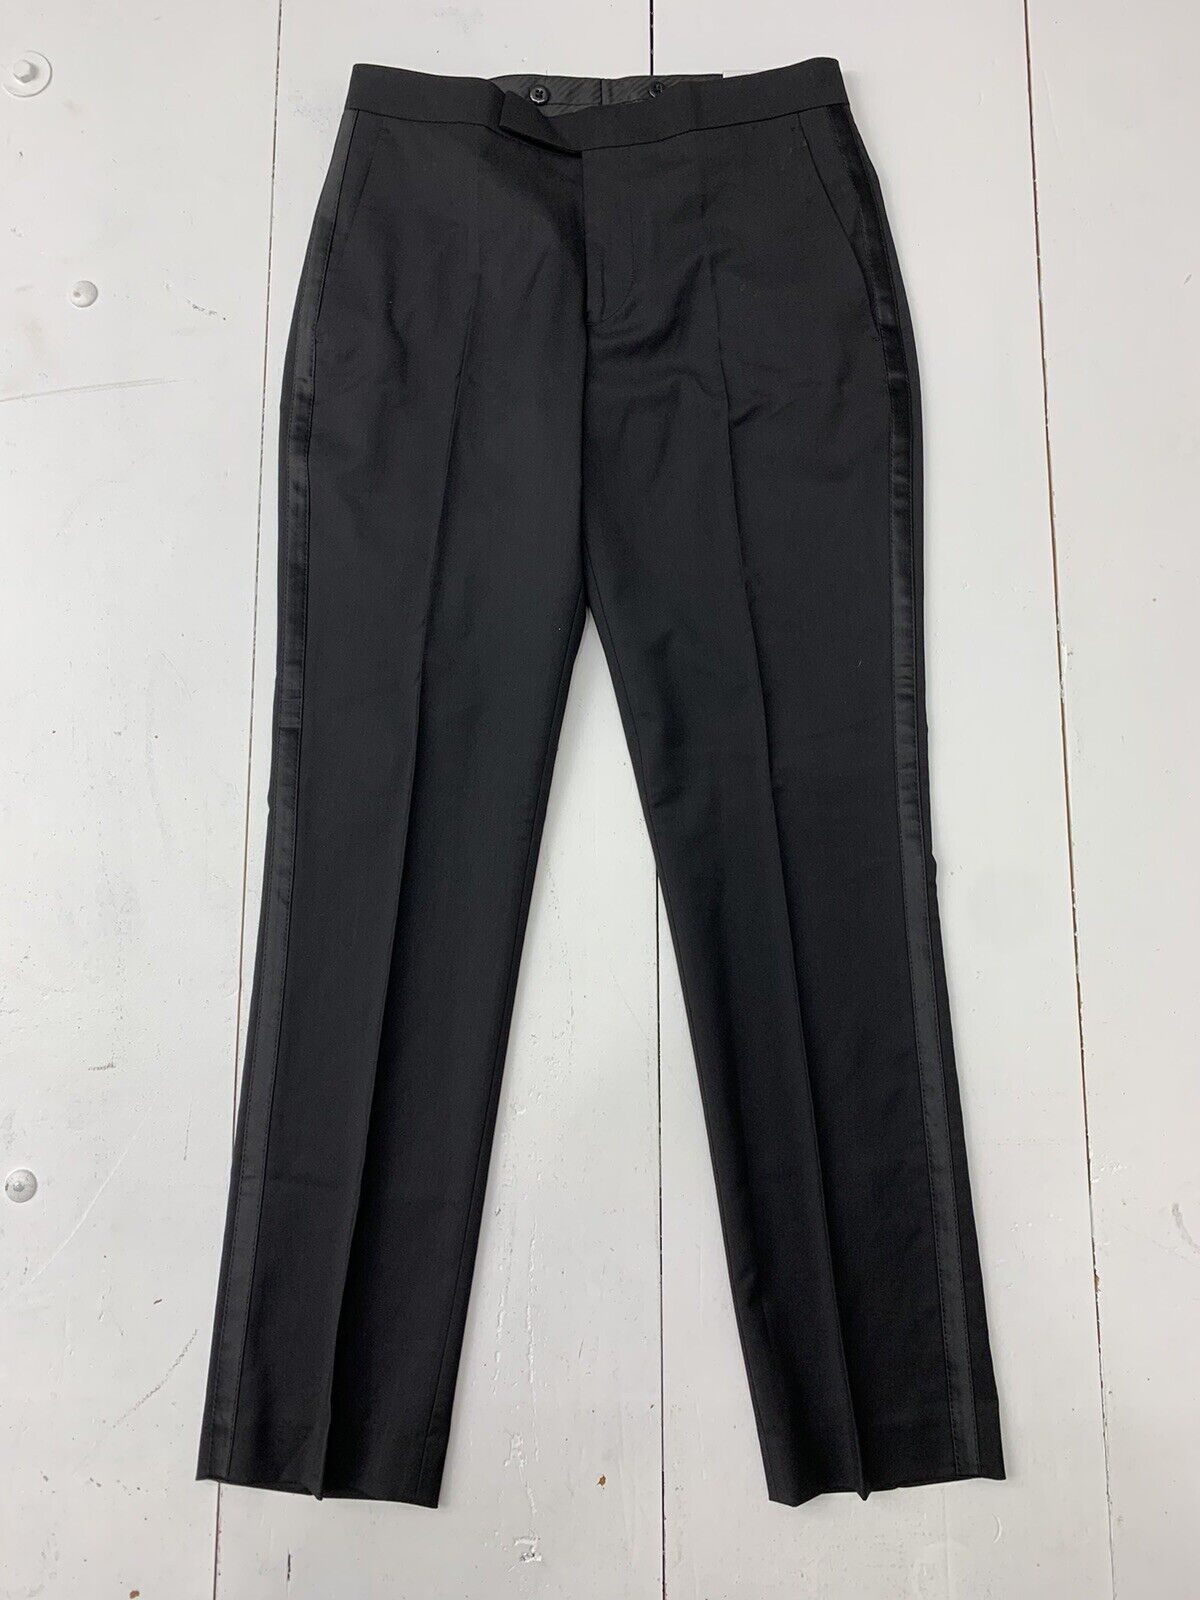 Slim Black Suit Pants